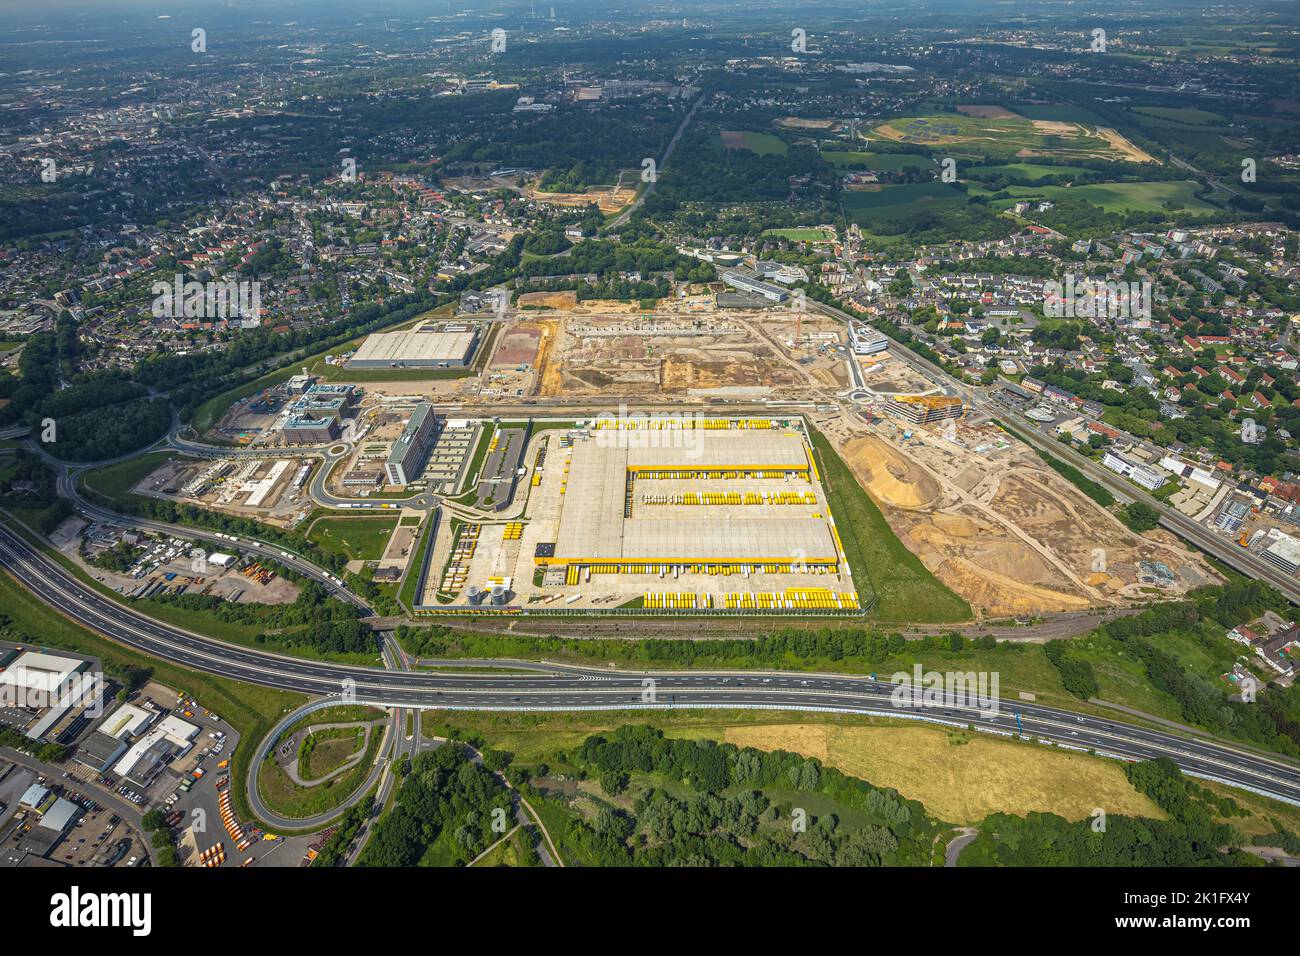 Vue aérienne, chantier Mark 51/7, centre logistique DHL, Laer, Bochum, région de Ruhr, Rhénanie-du-Nord-Westphalie, Allemagne, travaux de construction, Bâtiment Banque D'Images